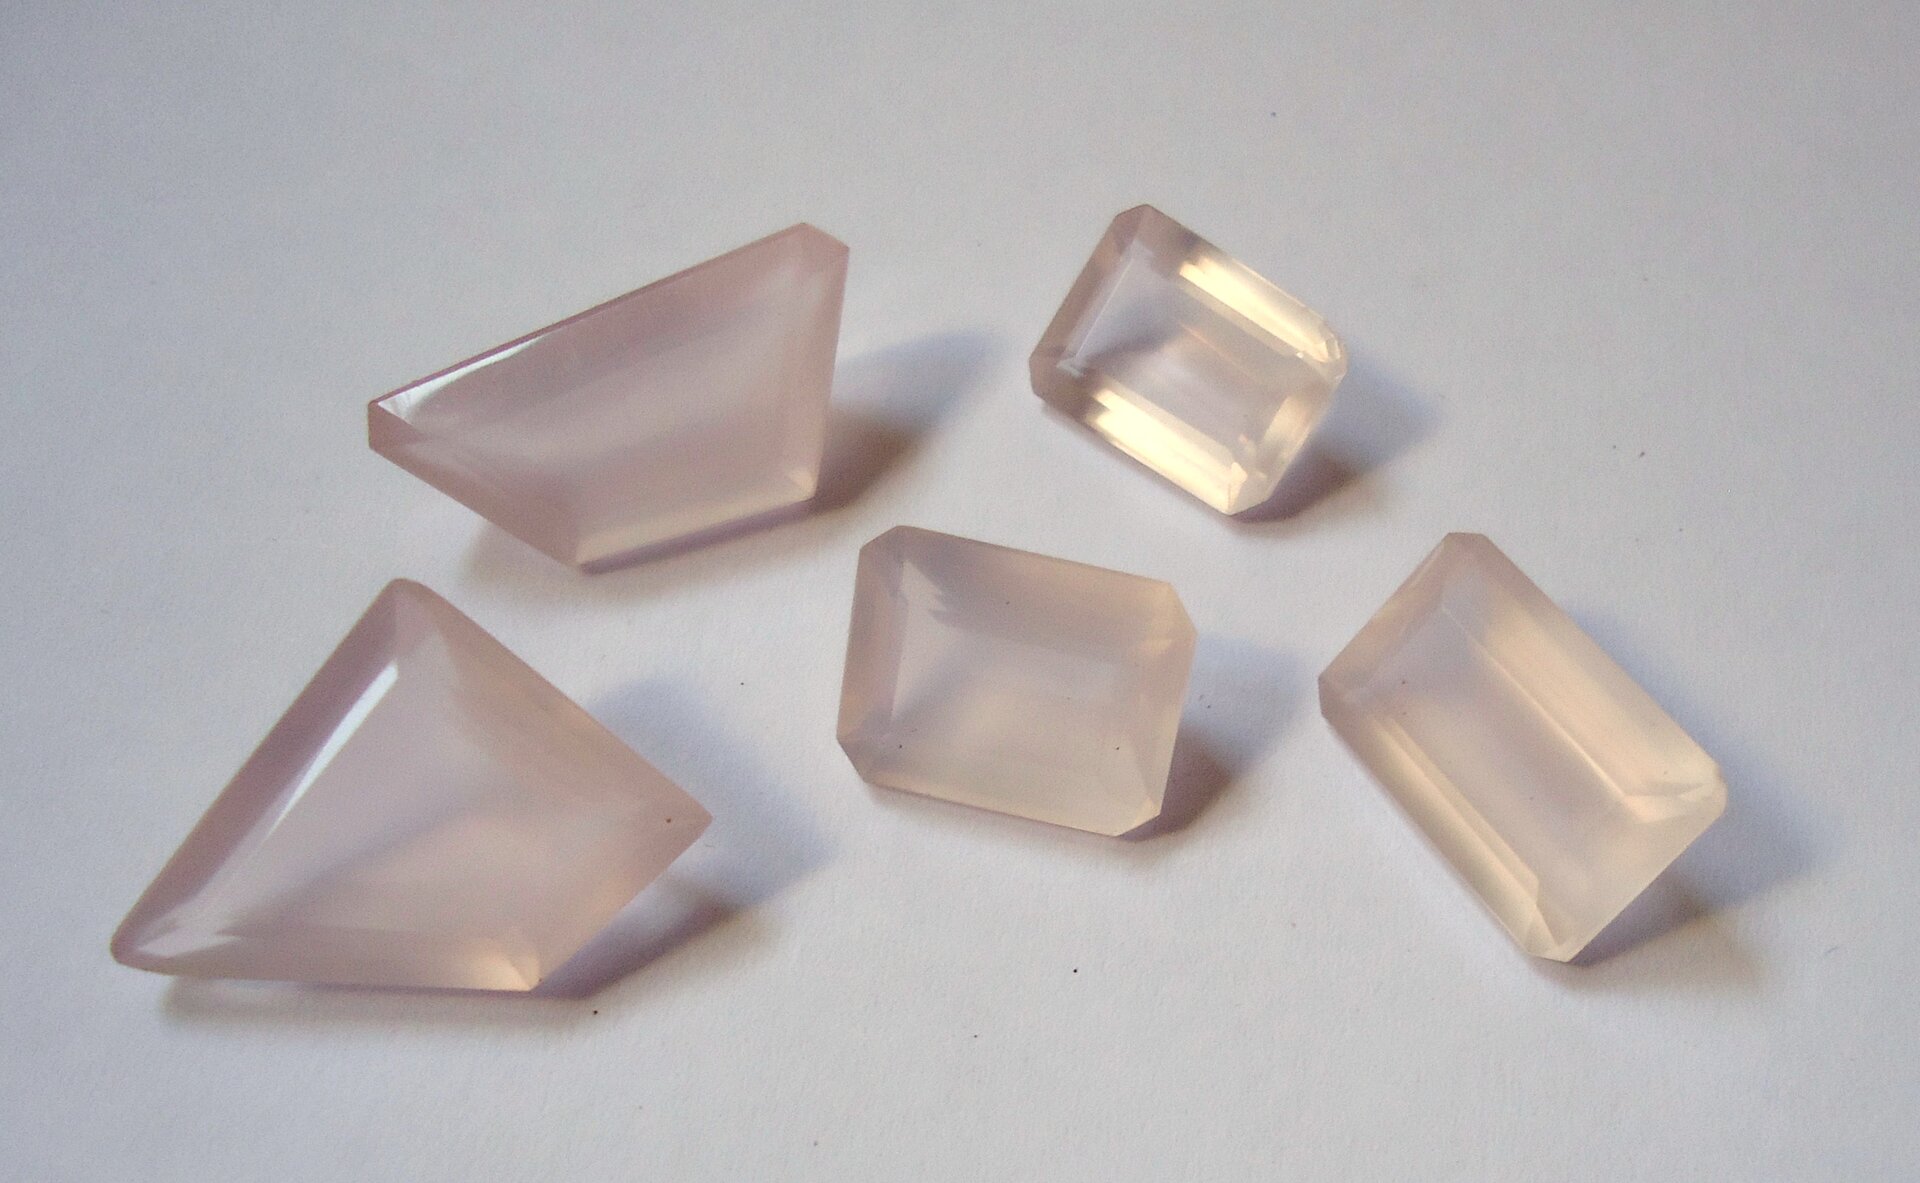 Zdjęcie przedstawia pięć oszlifowanych kawałków kwarcu różowego o mlecznoróżowej barwie. Trzy mają szlif szmaragdowy, czyli prostokątny, zaś dwa są nieregularnymi pięciobokami. Wszystkie kamienie leżą obok siebie na białym tle.